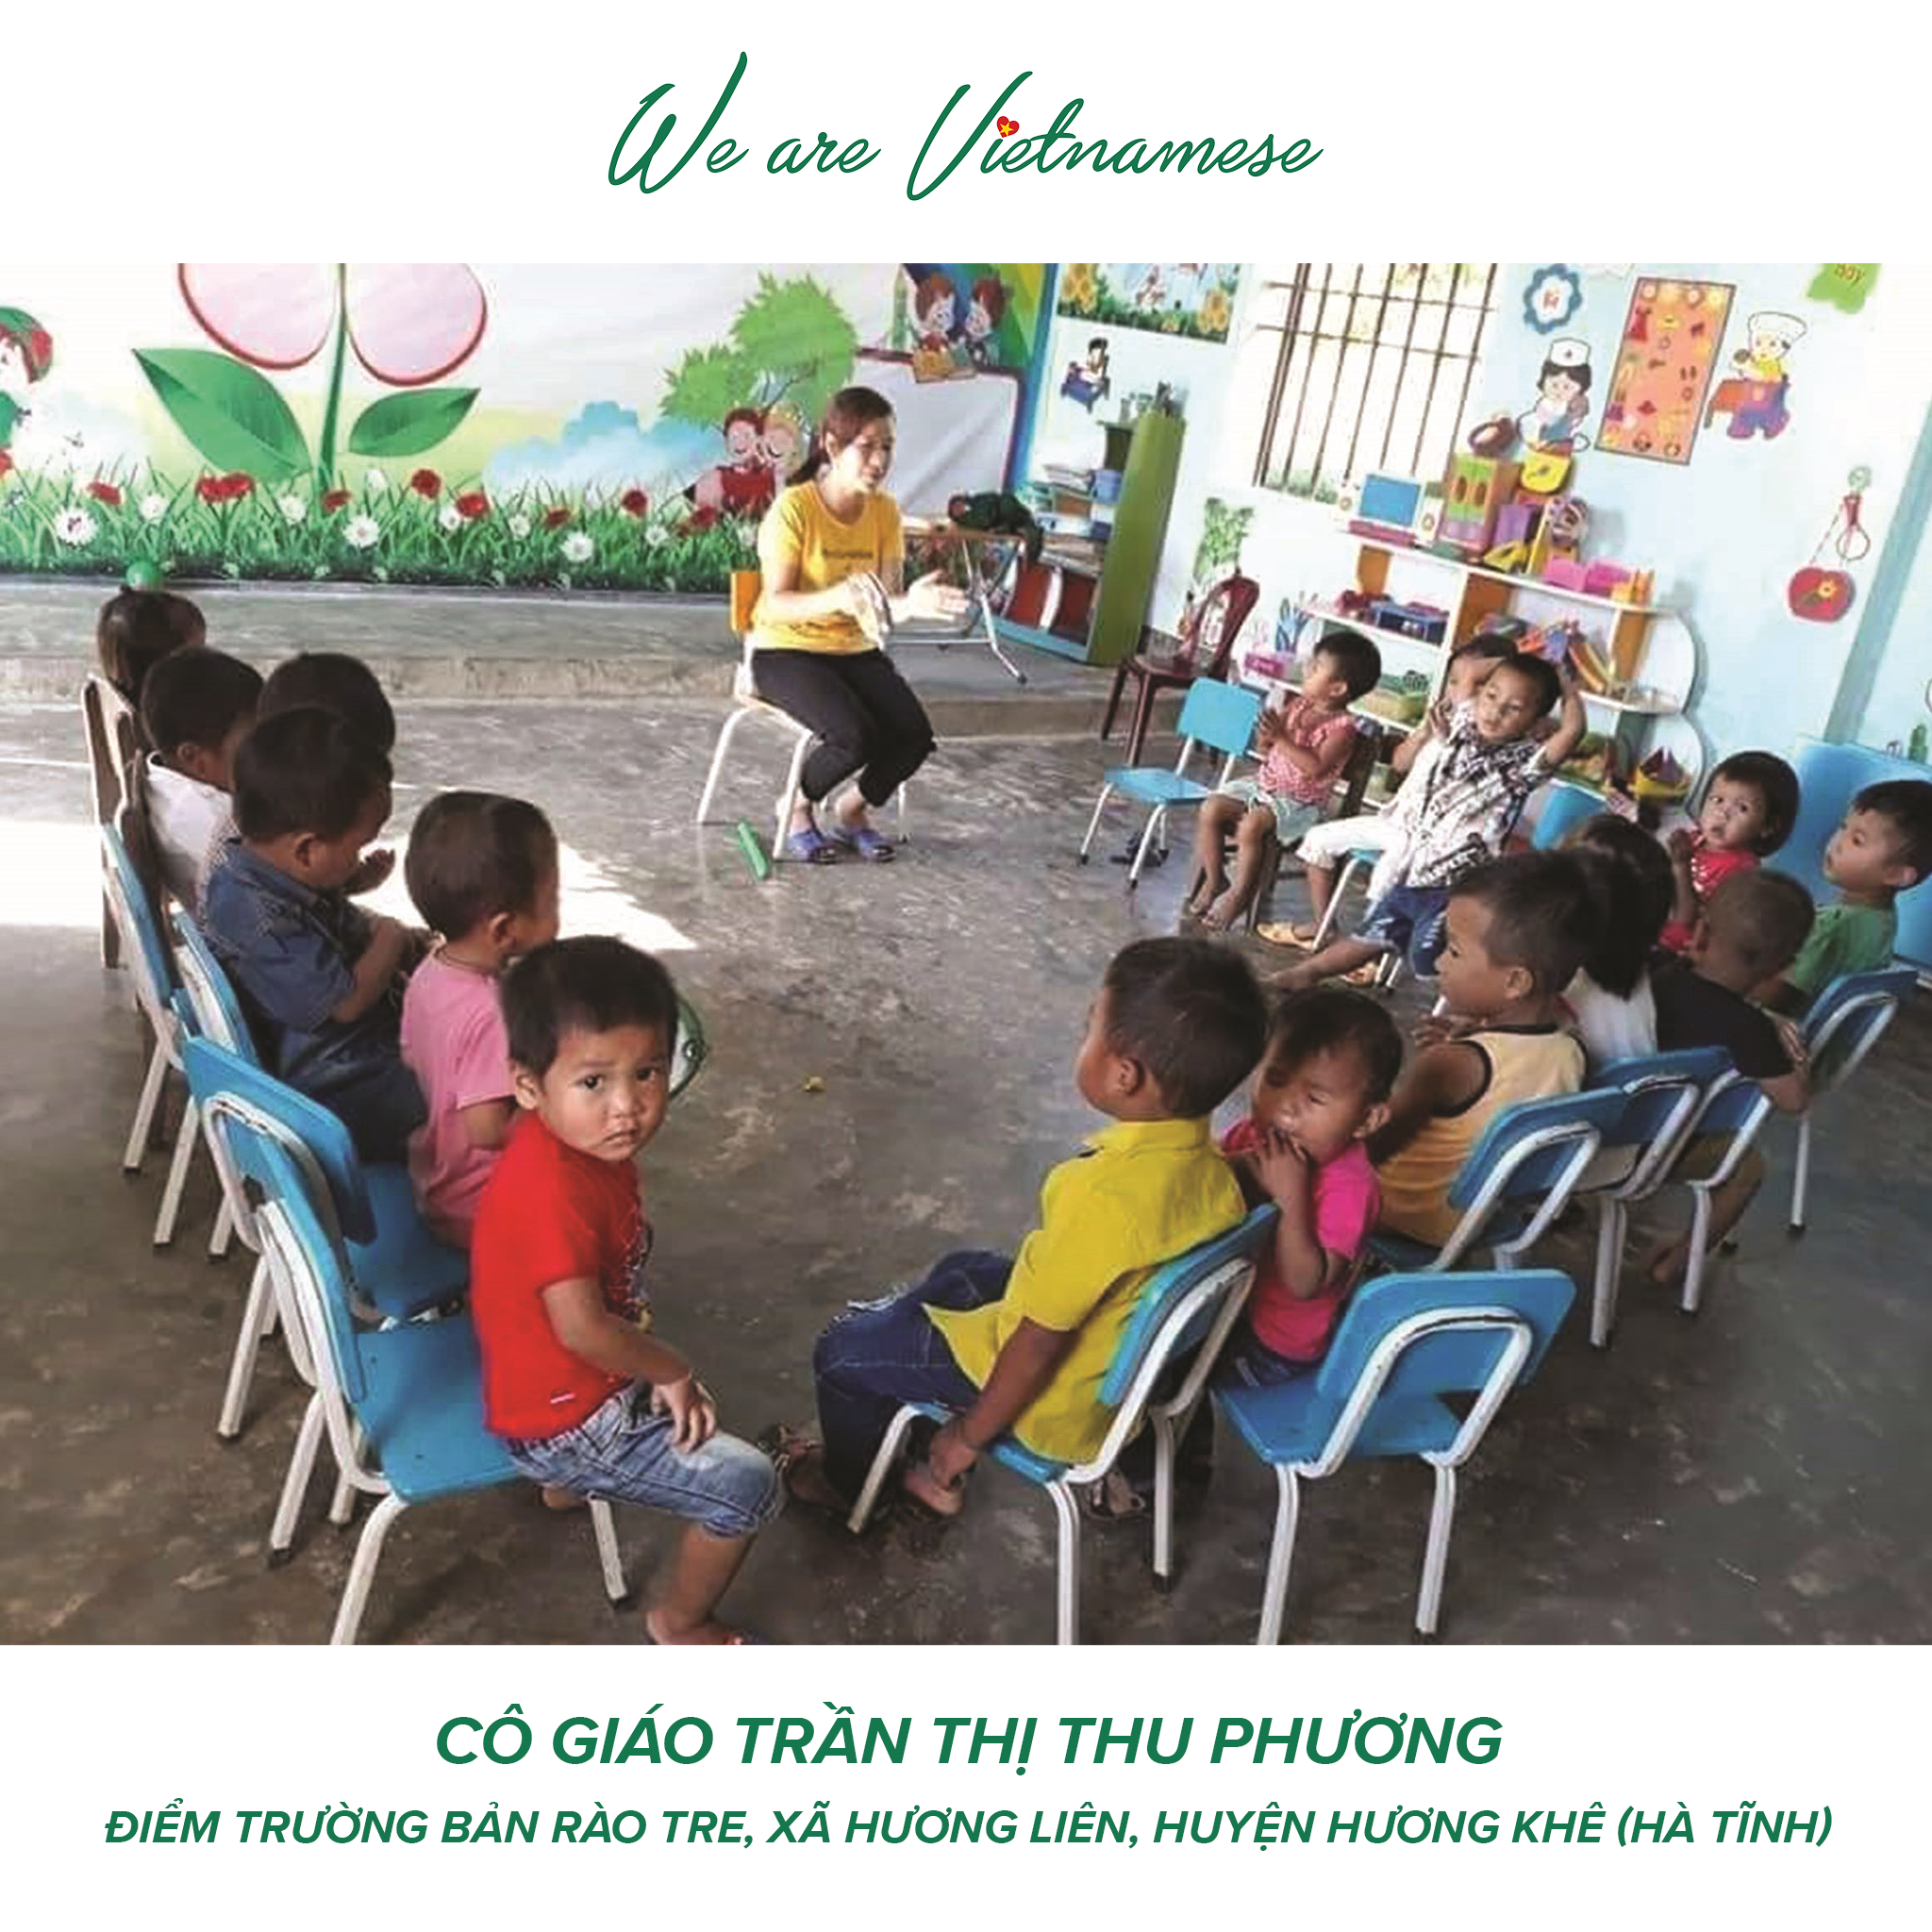 Cô giáo Trần Thị Thu Phương ân cần dạy dỗ các em học sinh dân tộc Chứt, bản Rào Tre